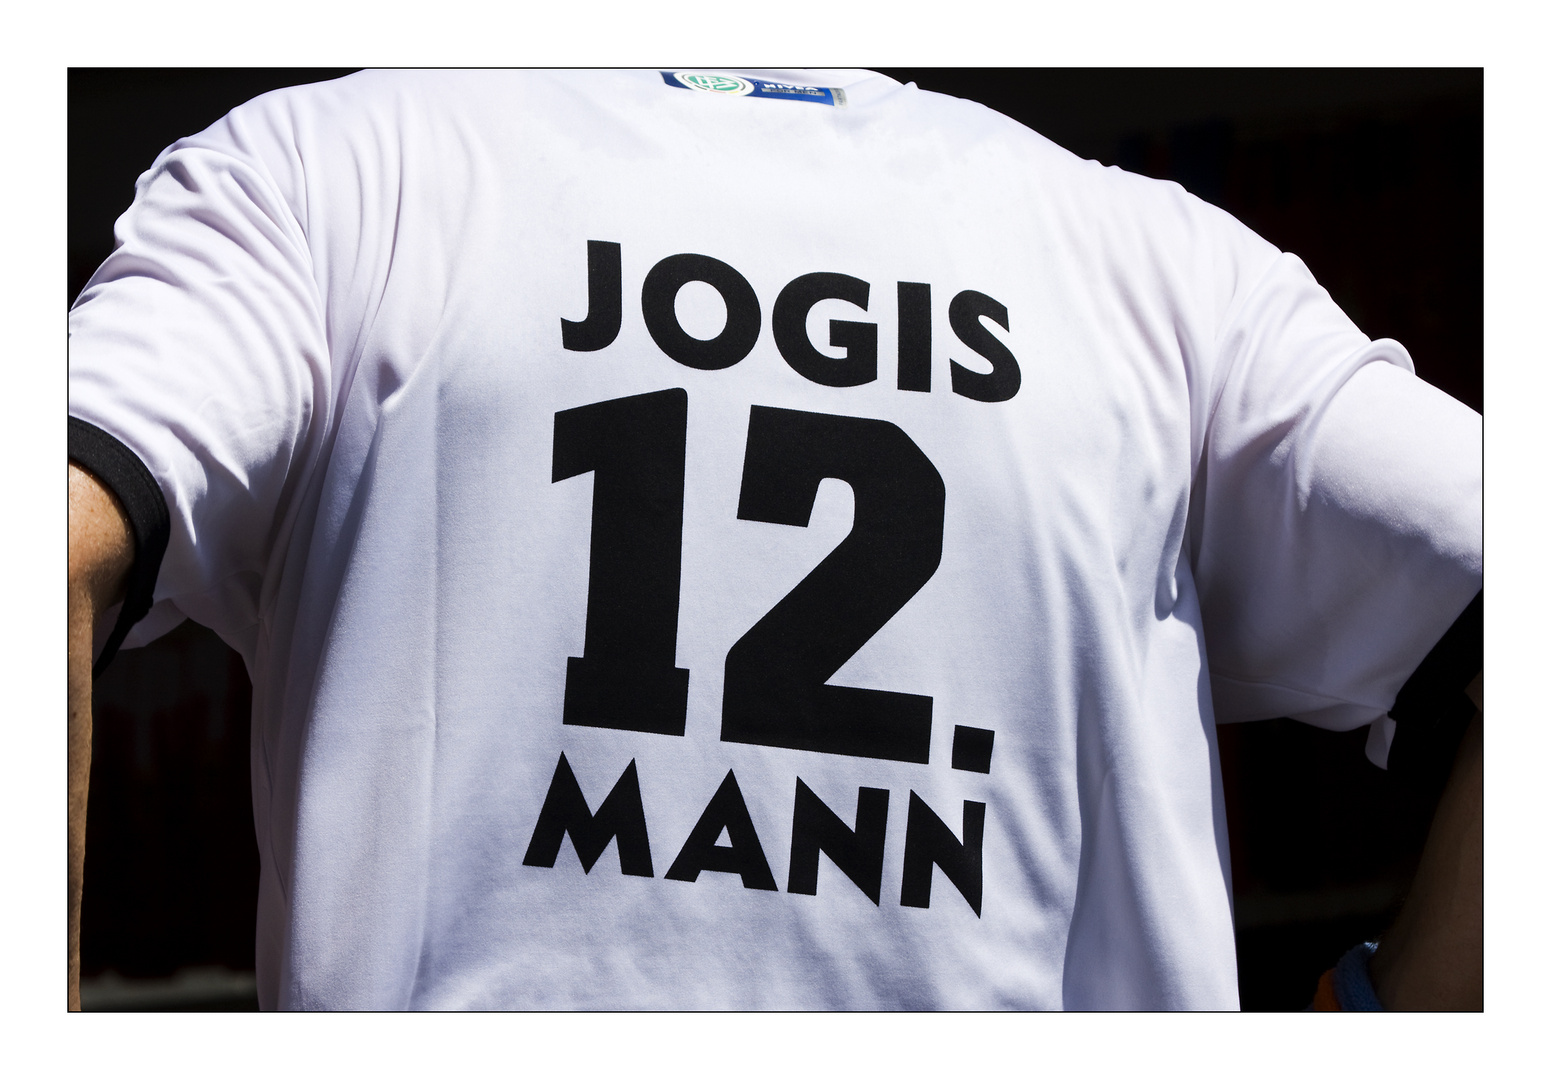 Jogi's 12. Mann